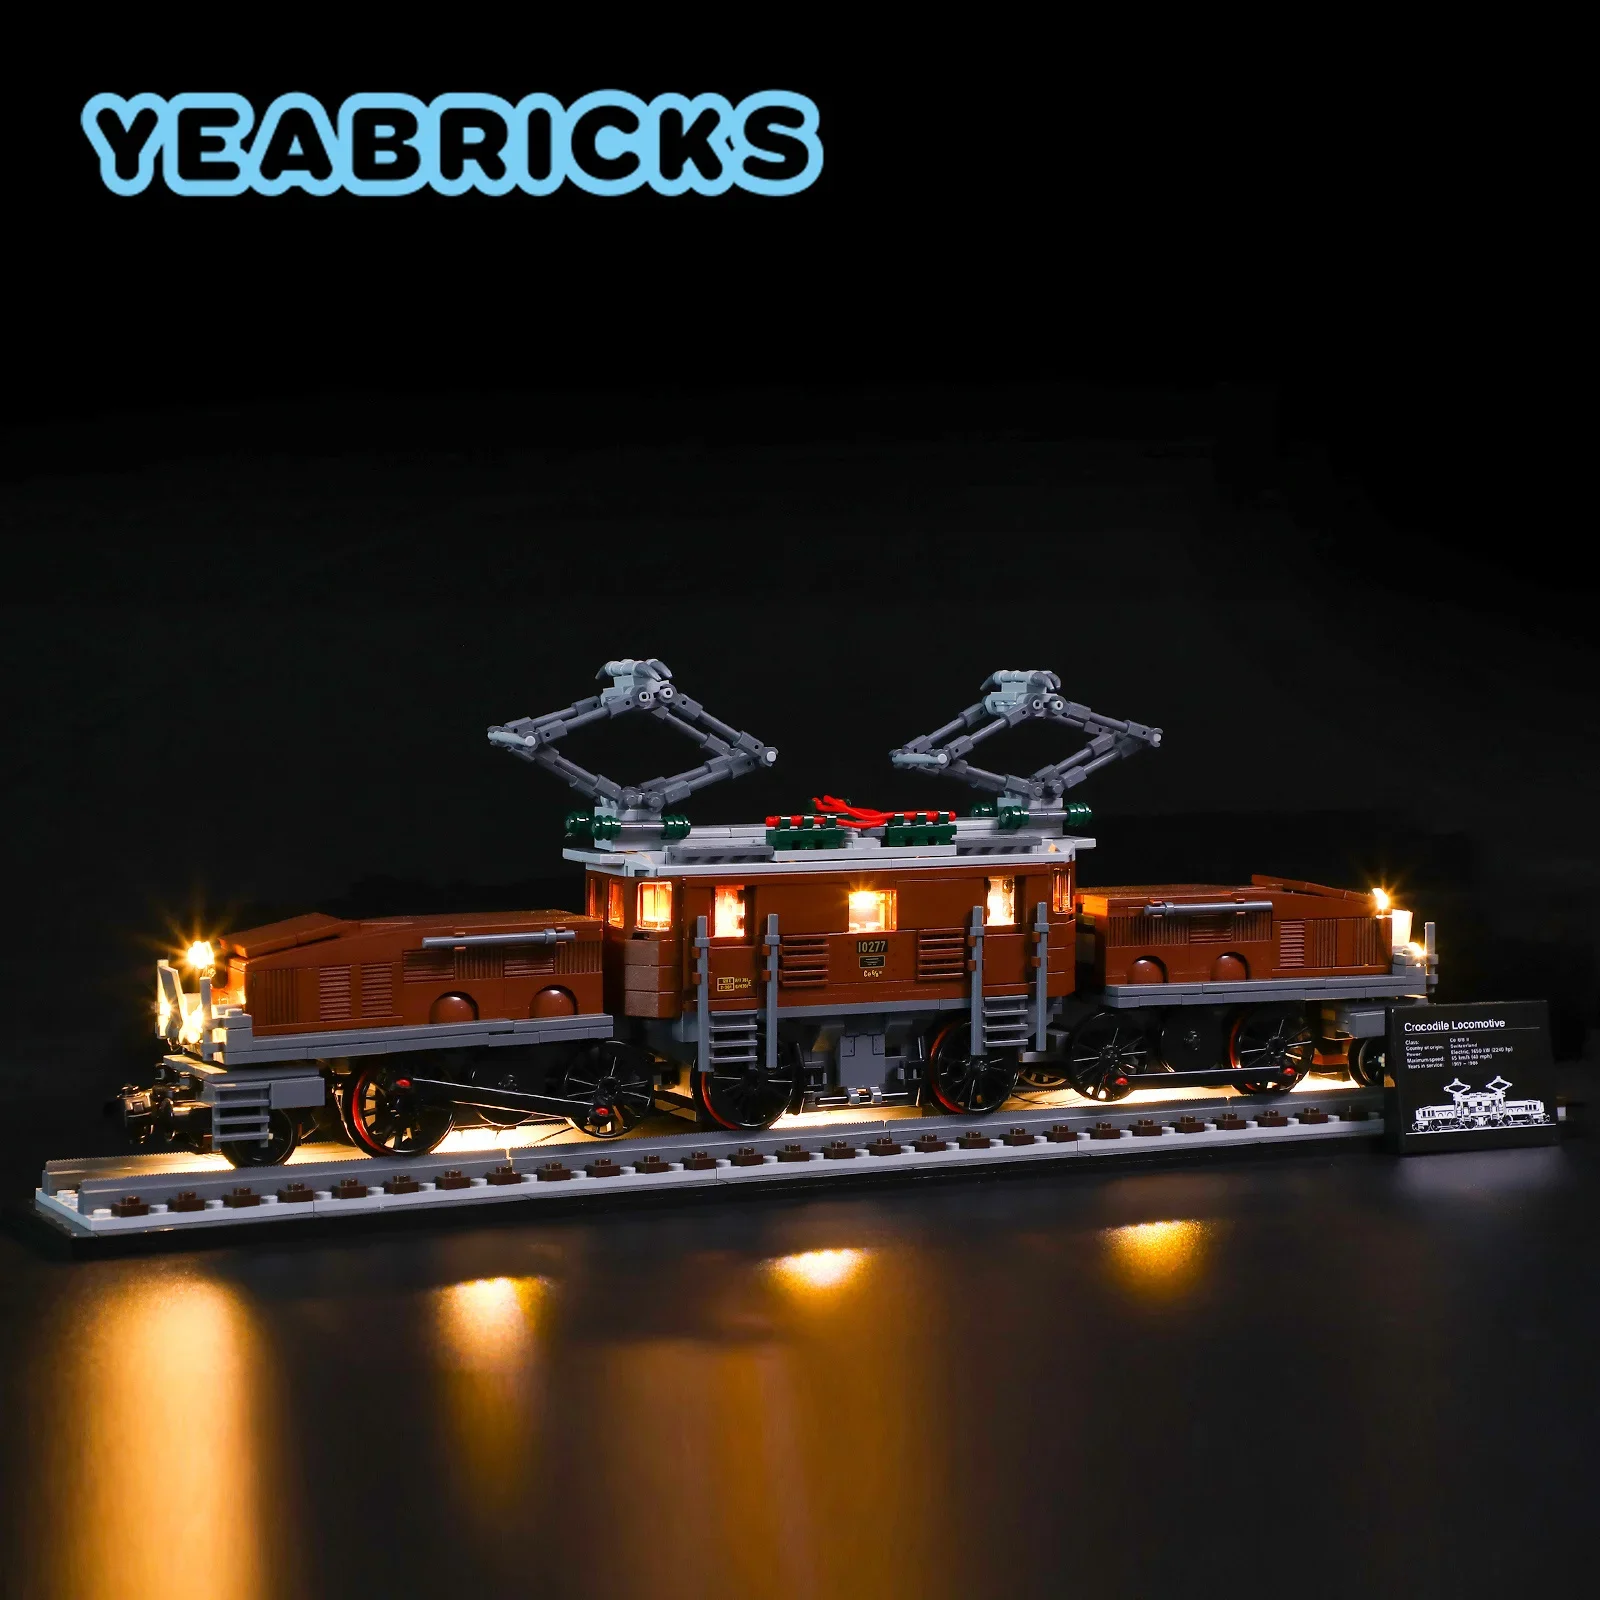 

Конструктор YEABRICKS со светодиодной подсветкой, модель 10277 г., набор строительных блоков «крокодил Локомотив» (не входит в комплект), детские игрушки